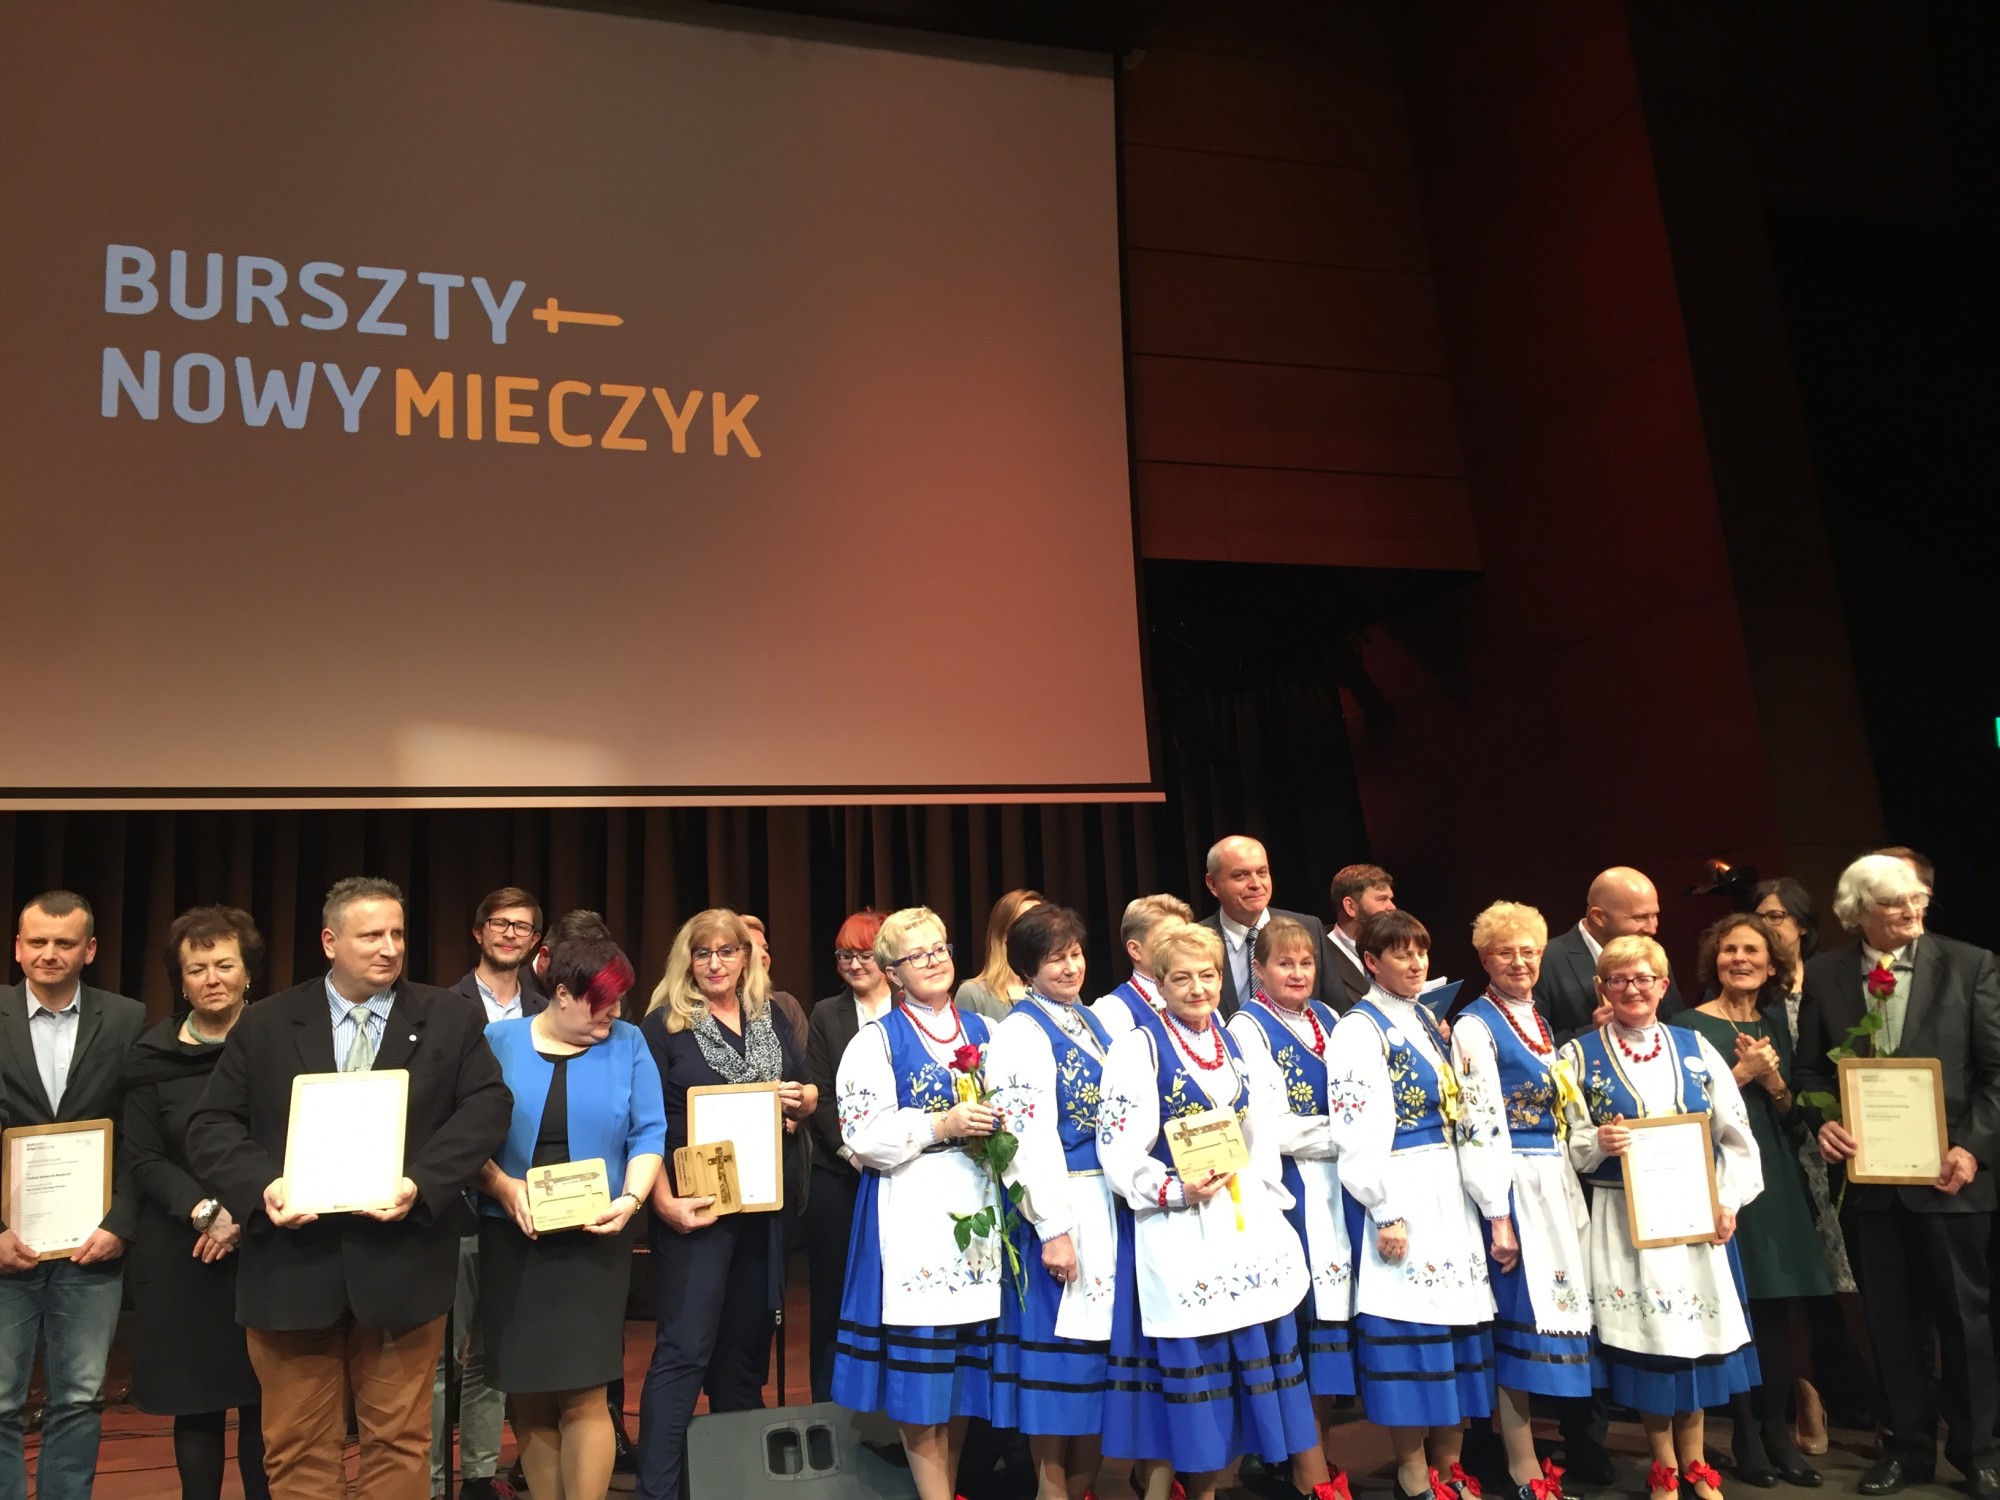 Stowarzyszenie „Kaszubianki” otrzymały Obywatelską Nagrodę Bursztynowego Mieczyka 2017